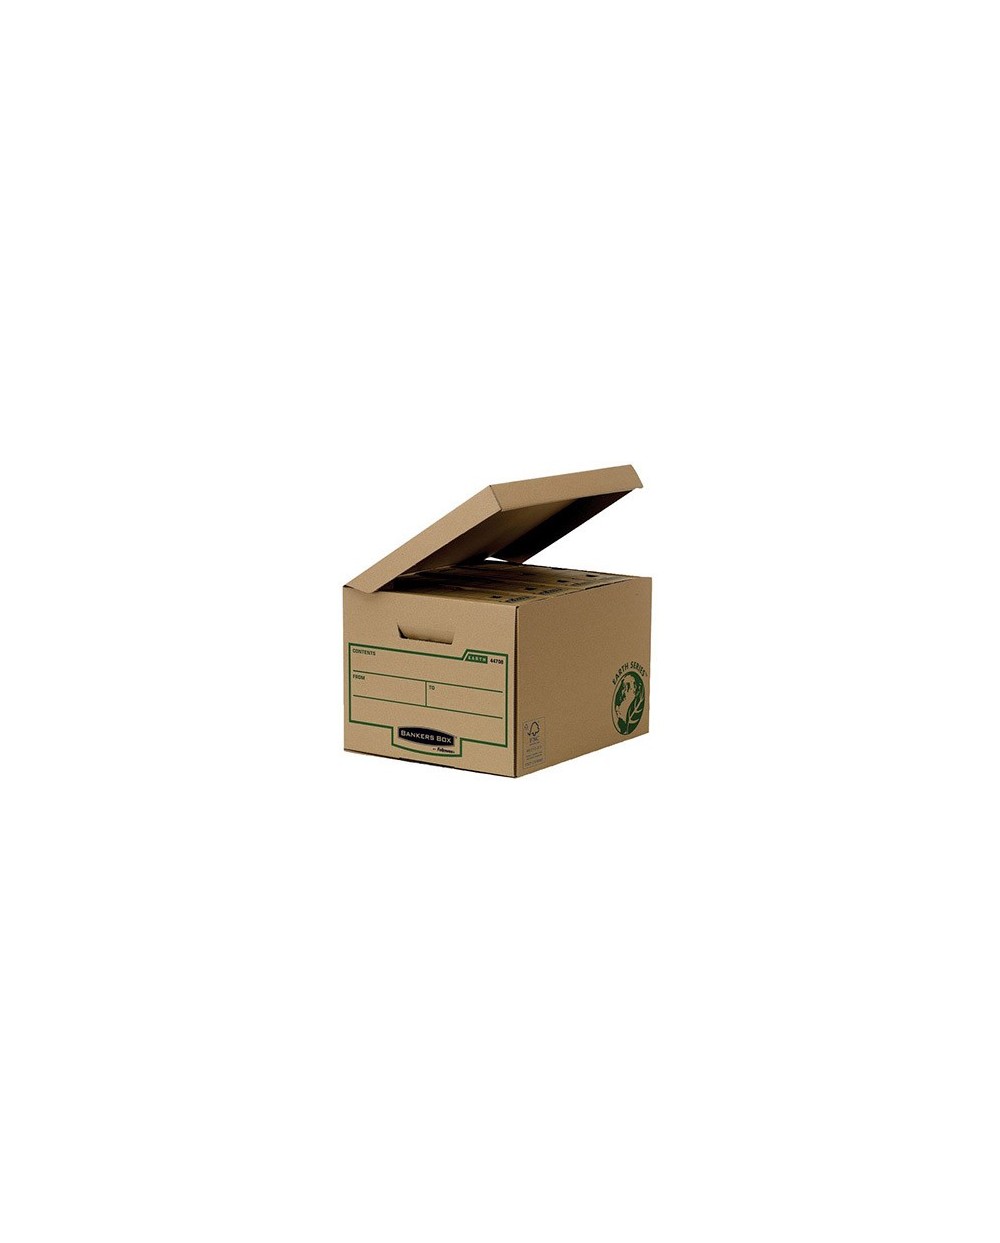 Cajon fellowes carton reciclado para almacenamiento de archivadores capacidad 4 cajas de archivo 80 mm